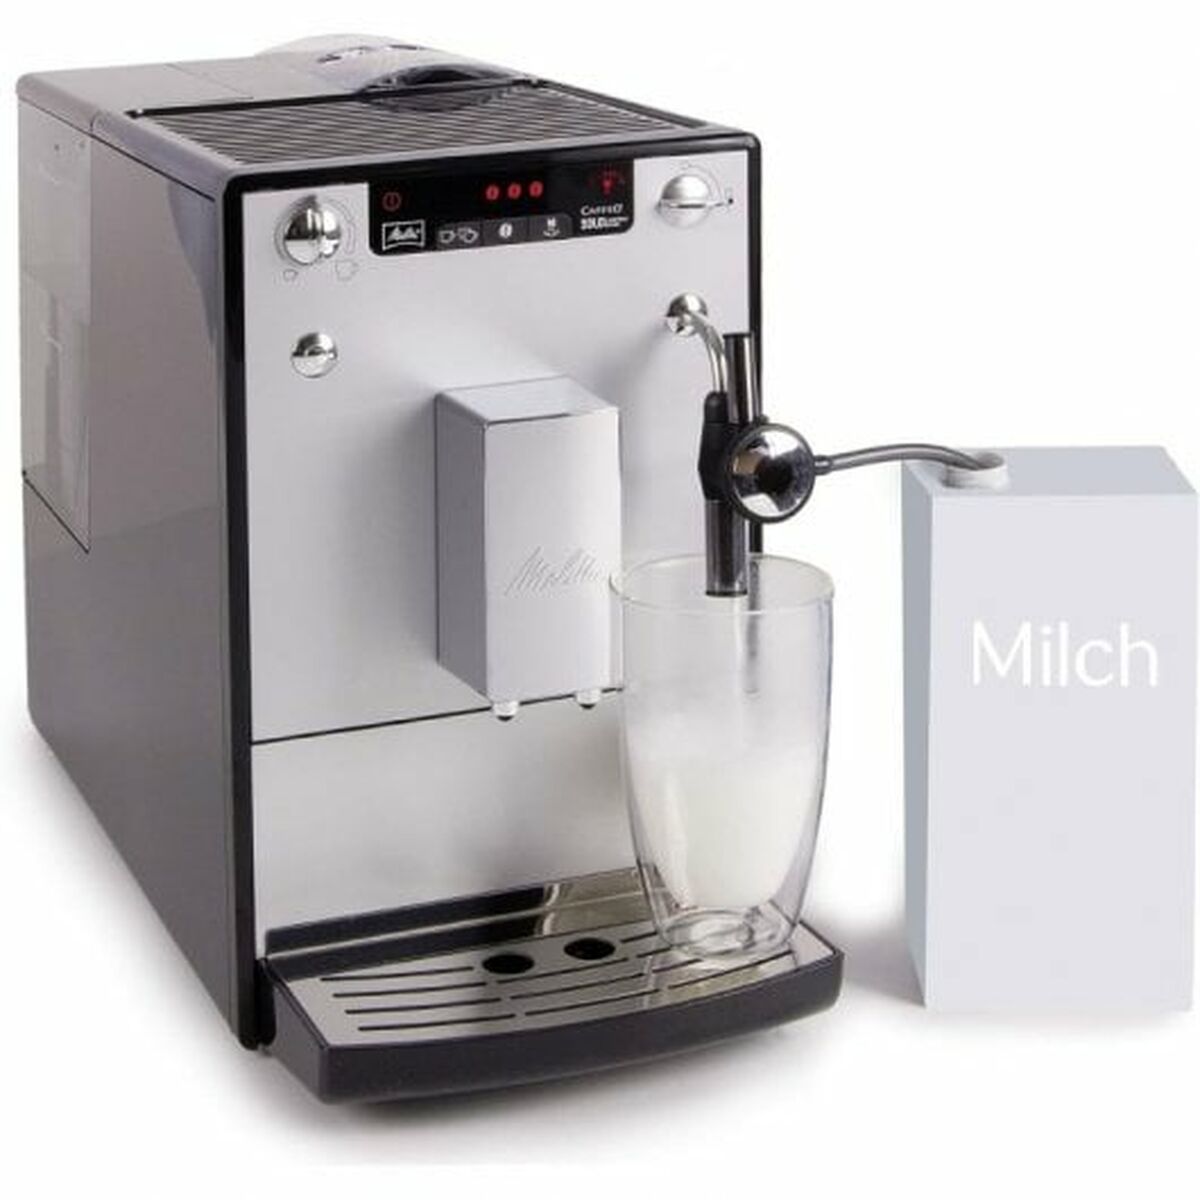 Superautomatische Kaffeemaschine Melitta 6679170 Silberfarben 1400 W 1450 W 15 bar 1,2 L - CA International 